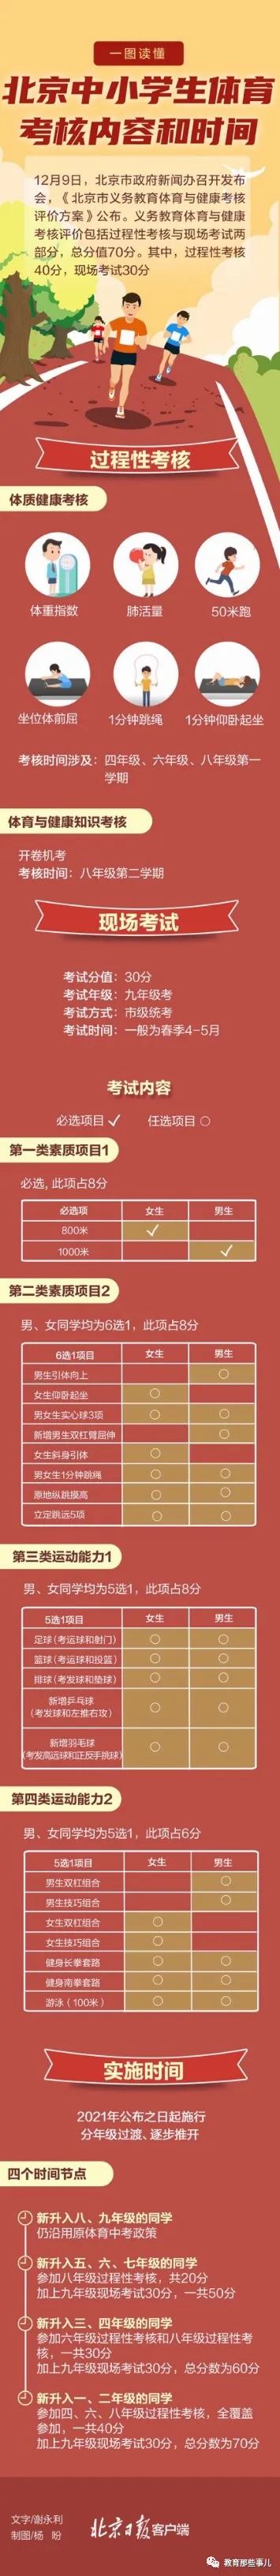 湖南省财政厅官网选项收藏三里屯影响大鸨体育